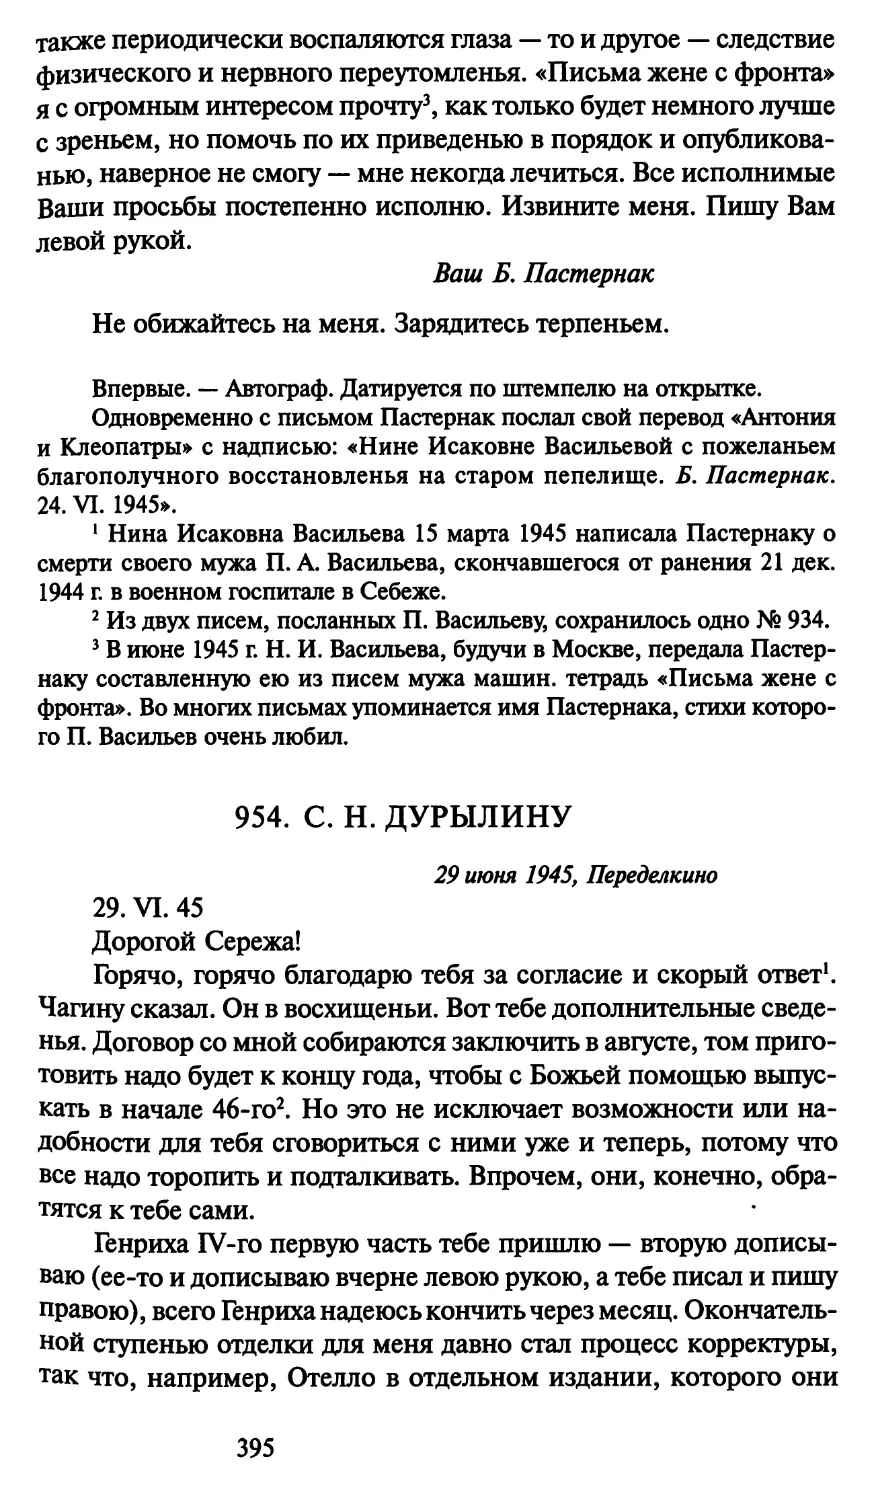 954. С. Н. Дурылину 29 июня 1945